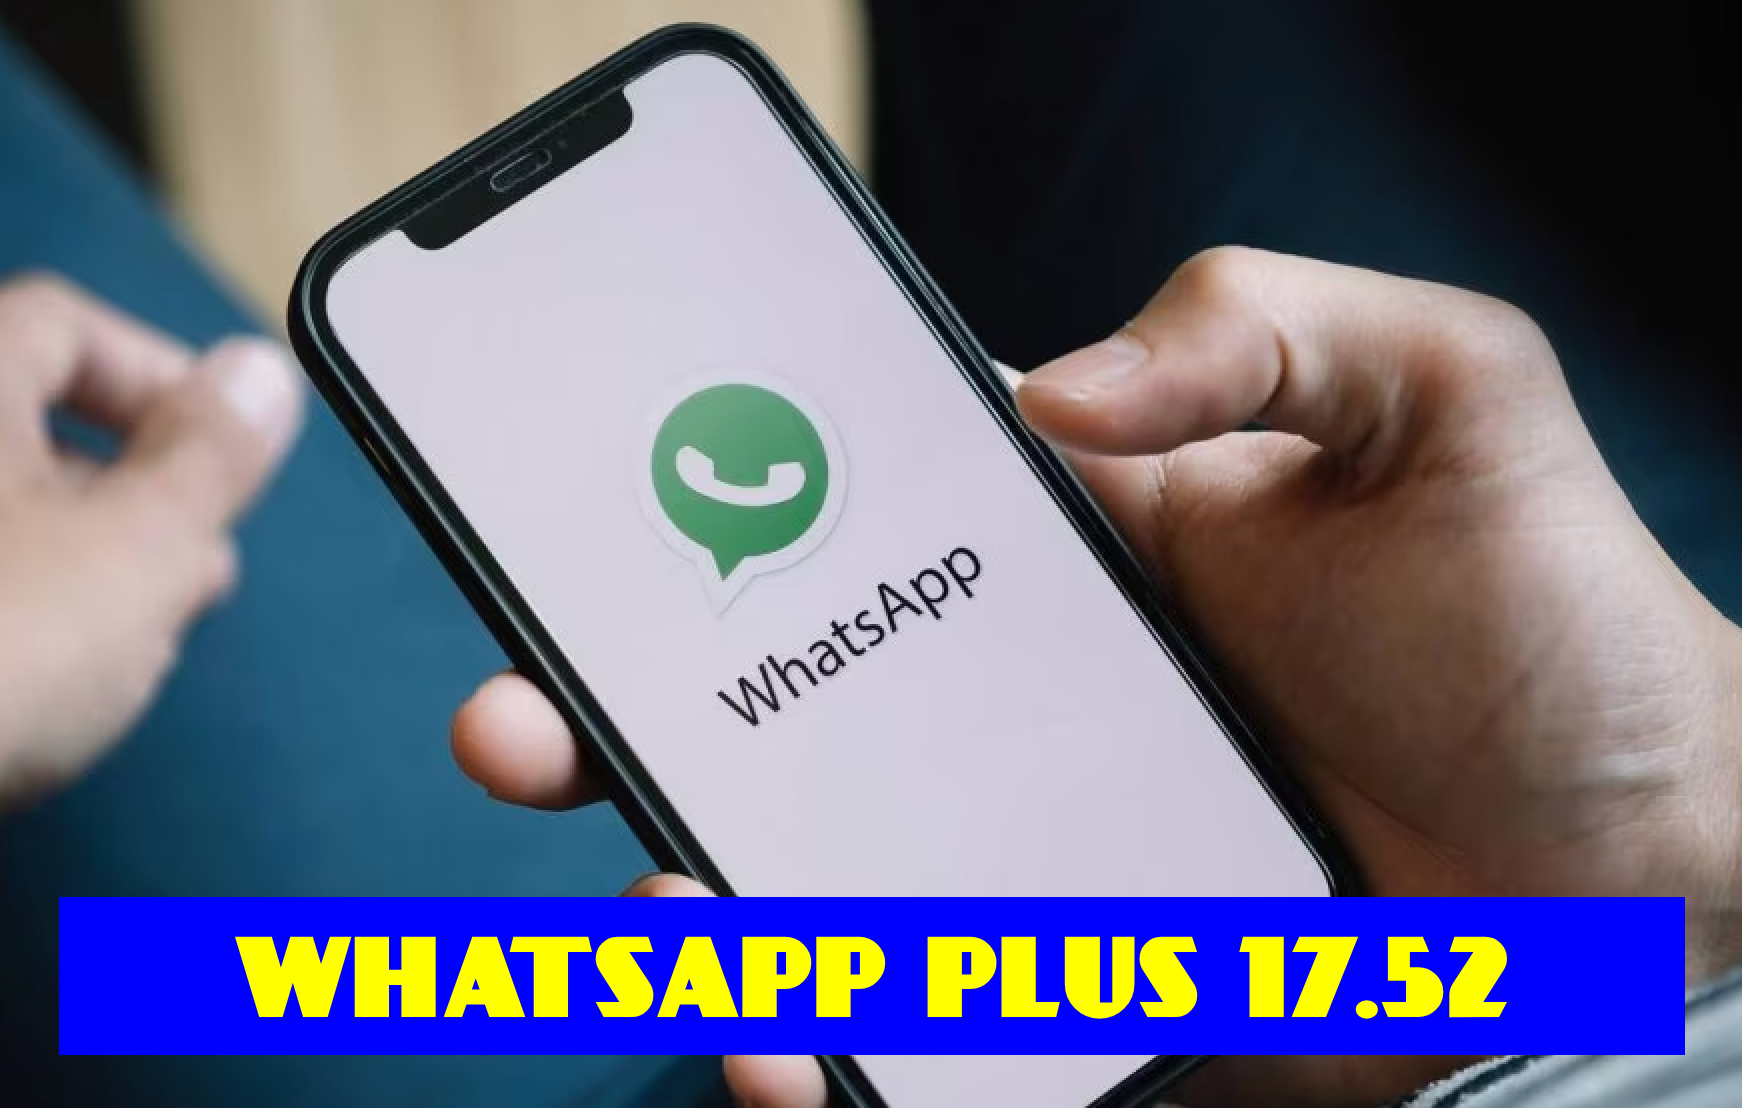 WhatsApp Plus 17.52